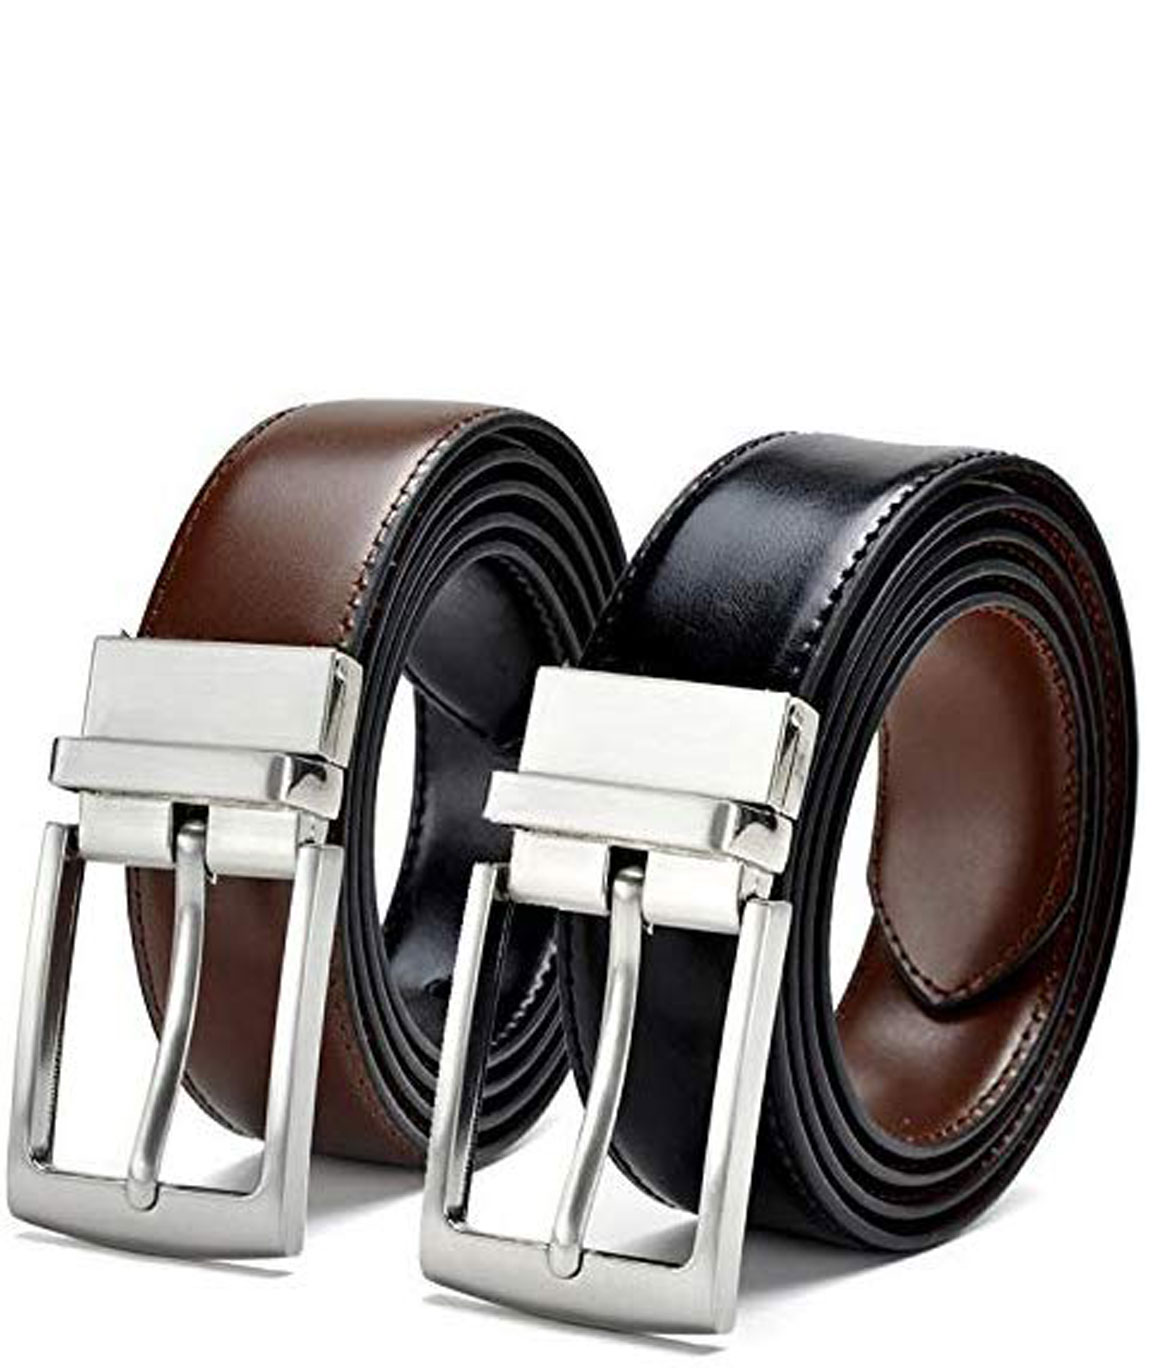 URBAN ALFAMI Mens Reversible belt for men, Black/Brown color formal gents belt, gift for men, upto 42 size, RSTX-01